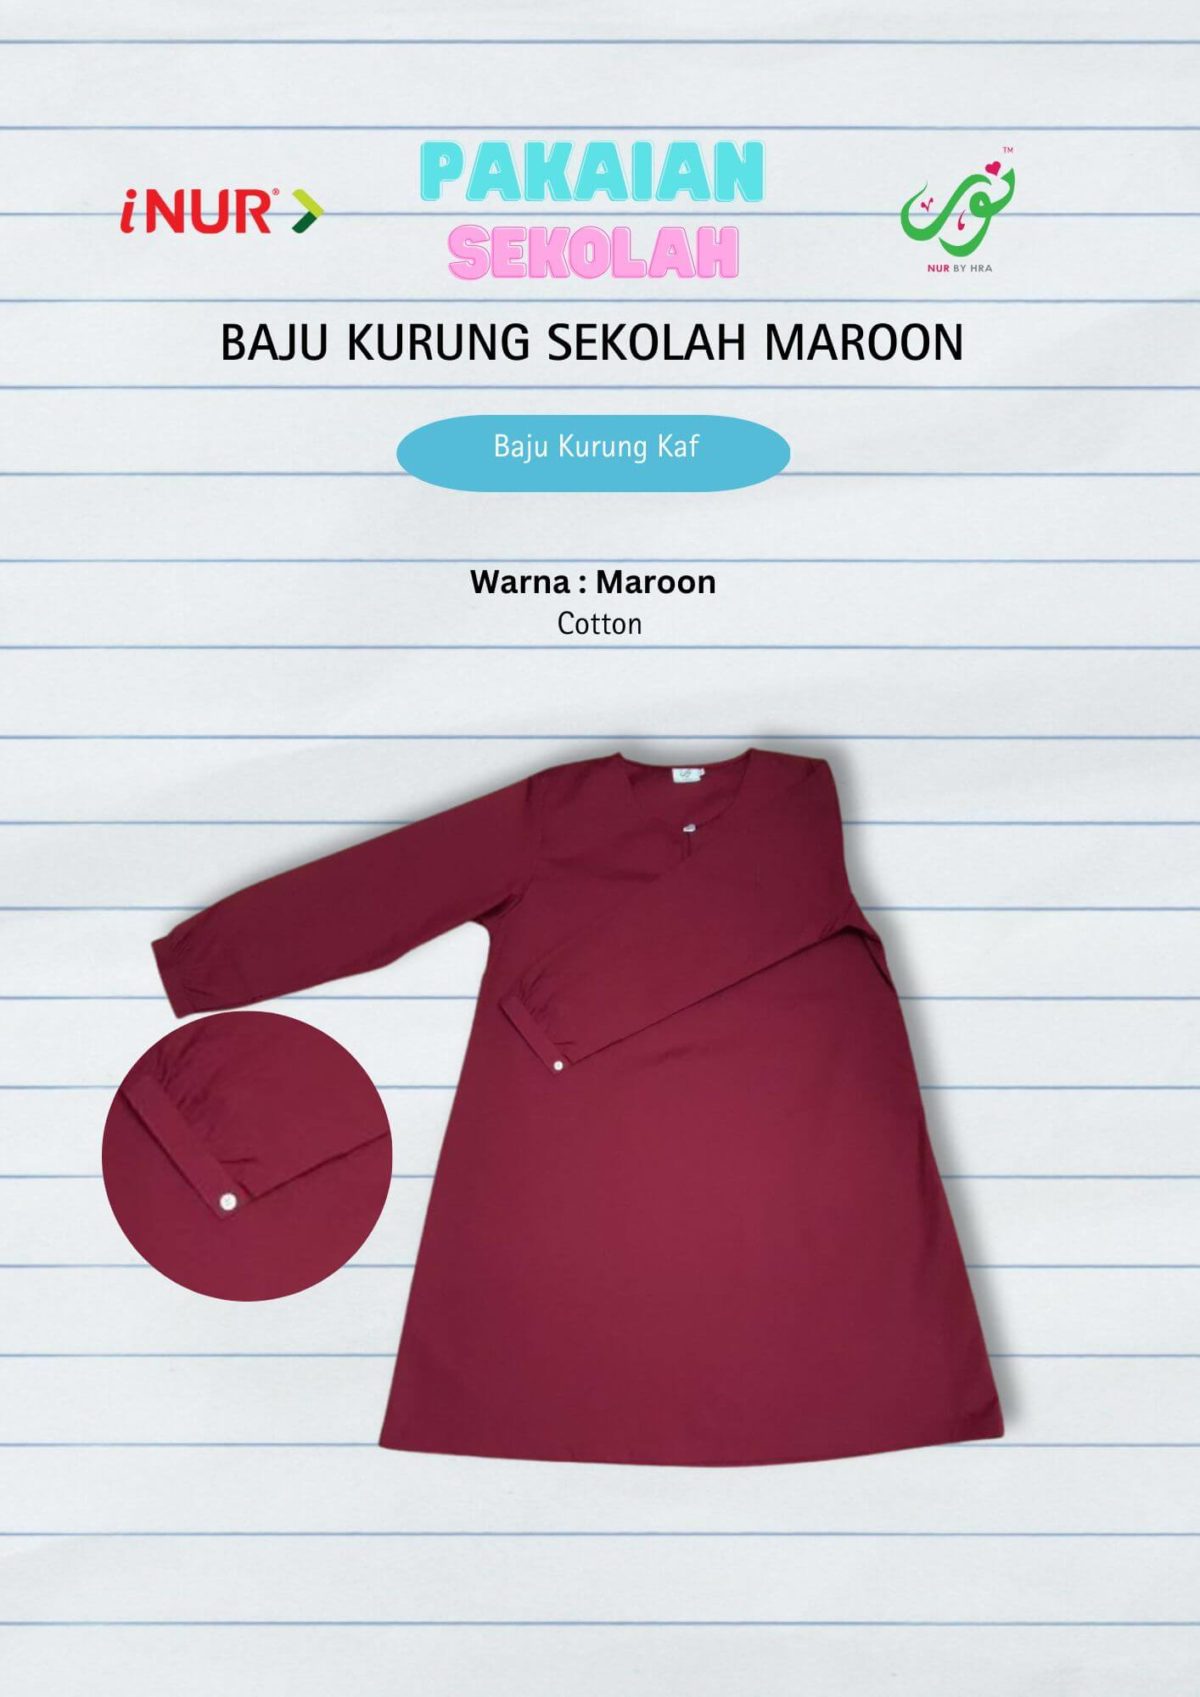 Baju Kurung Kebangsaan Maroon Kaf